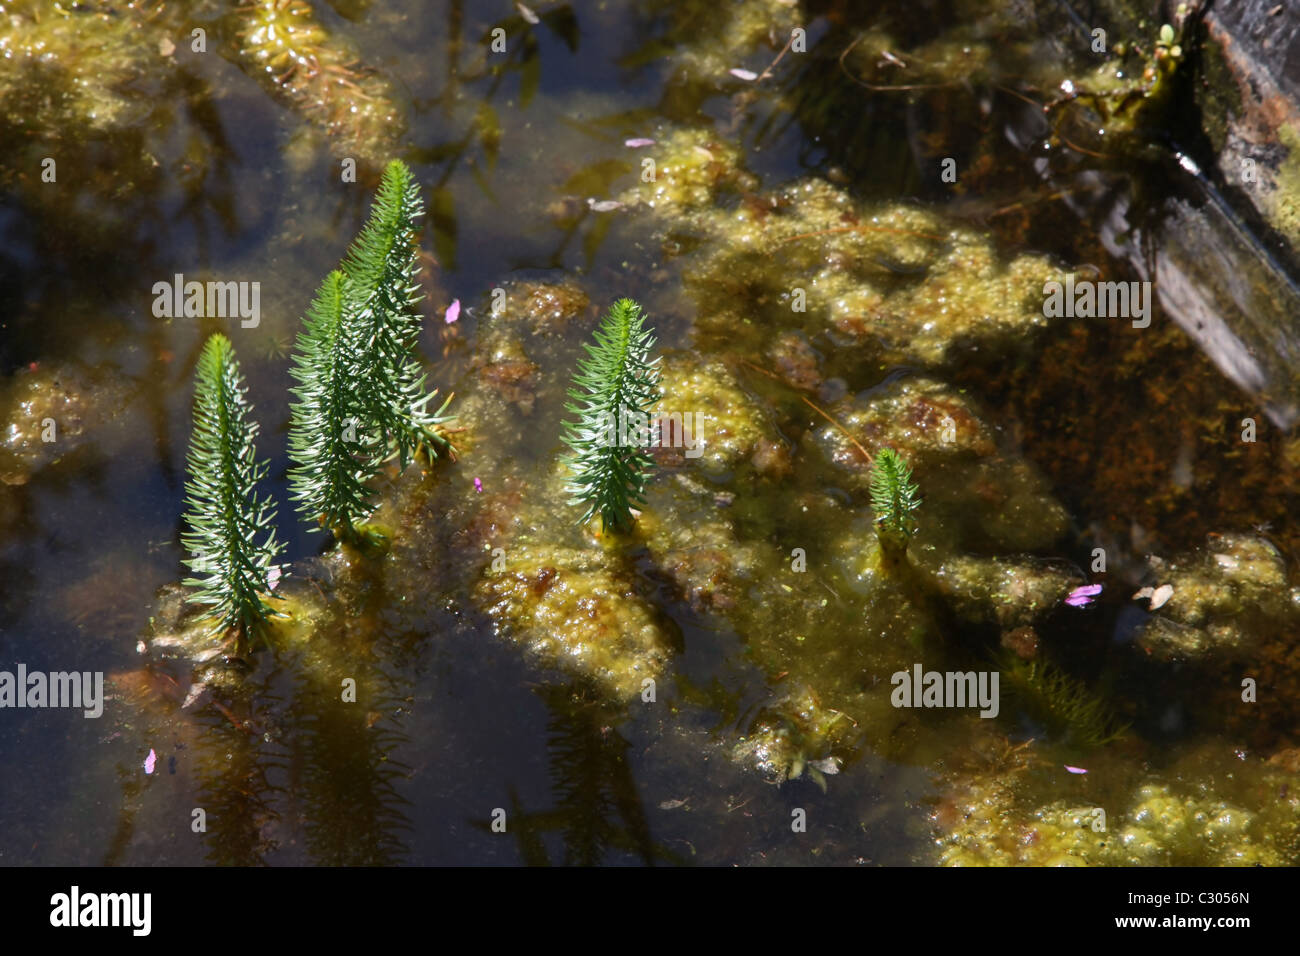 Covered with algae habitat Stock Photo